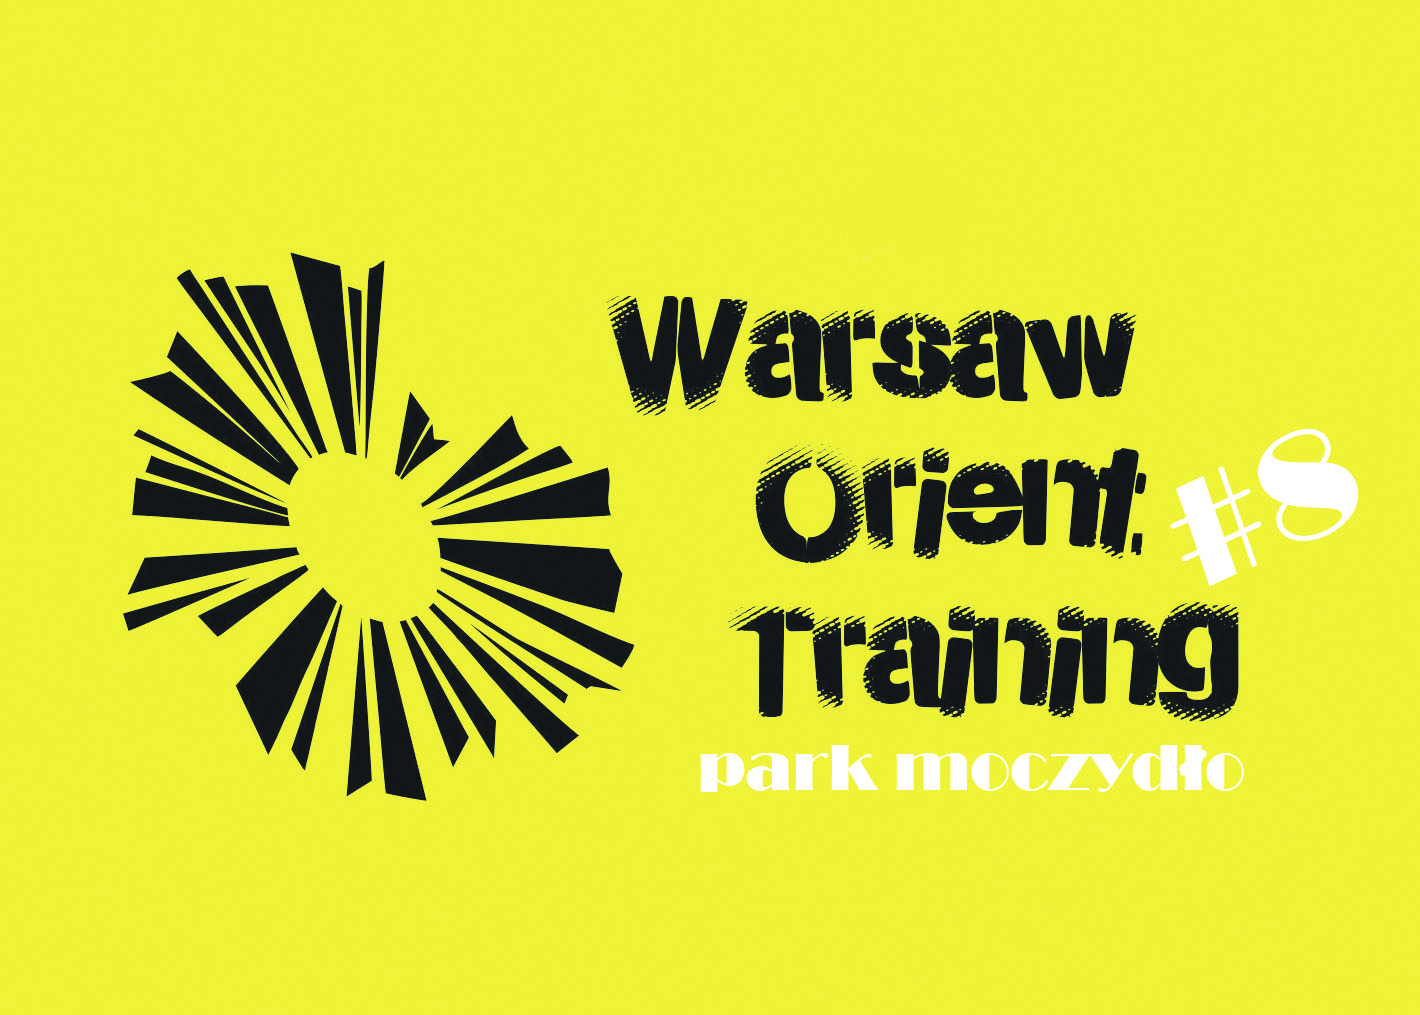 Warsaw Orient Training #8 - park Moczydło